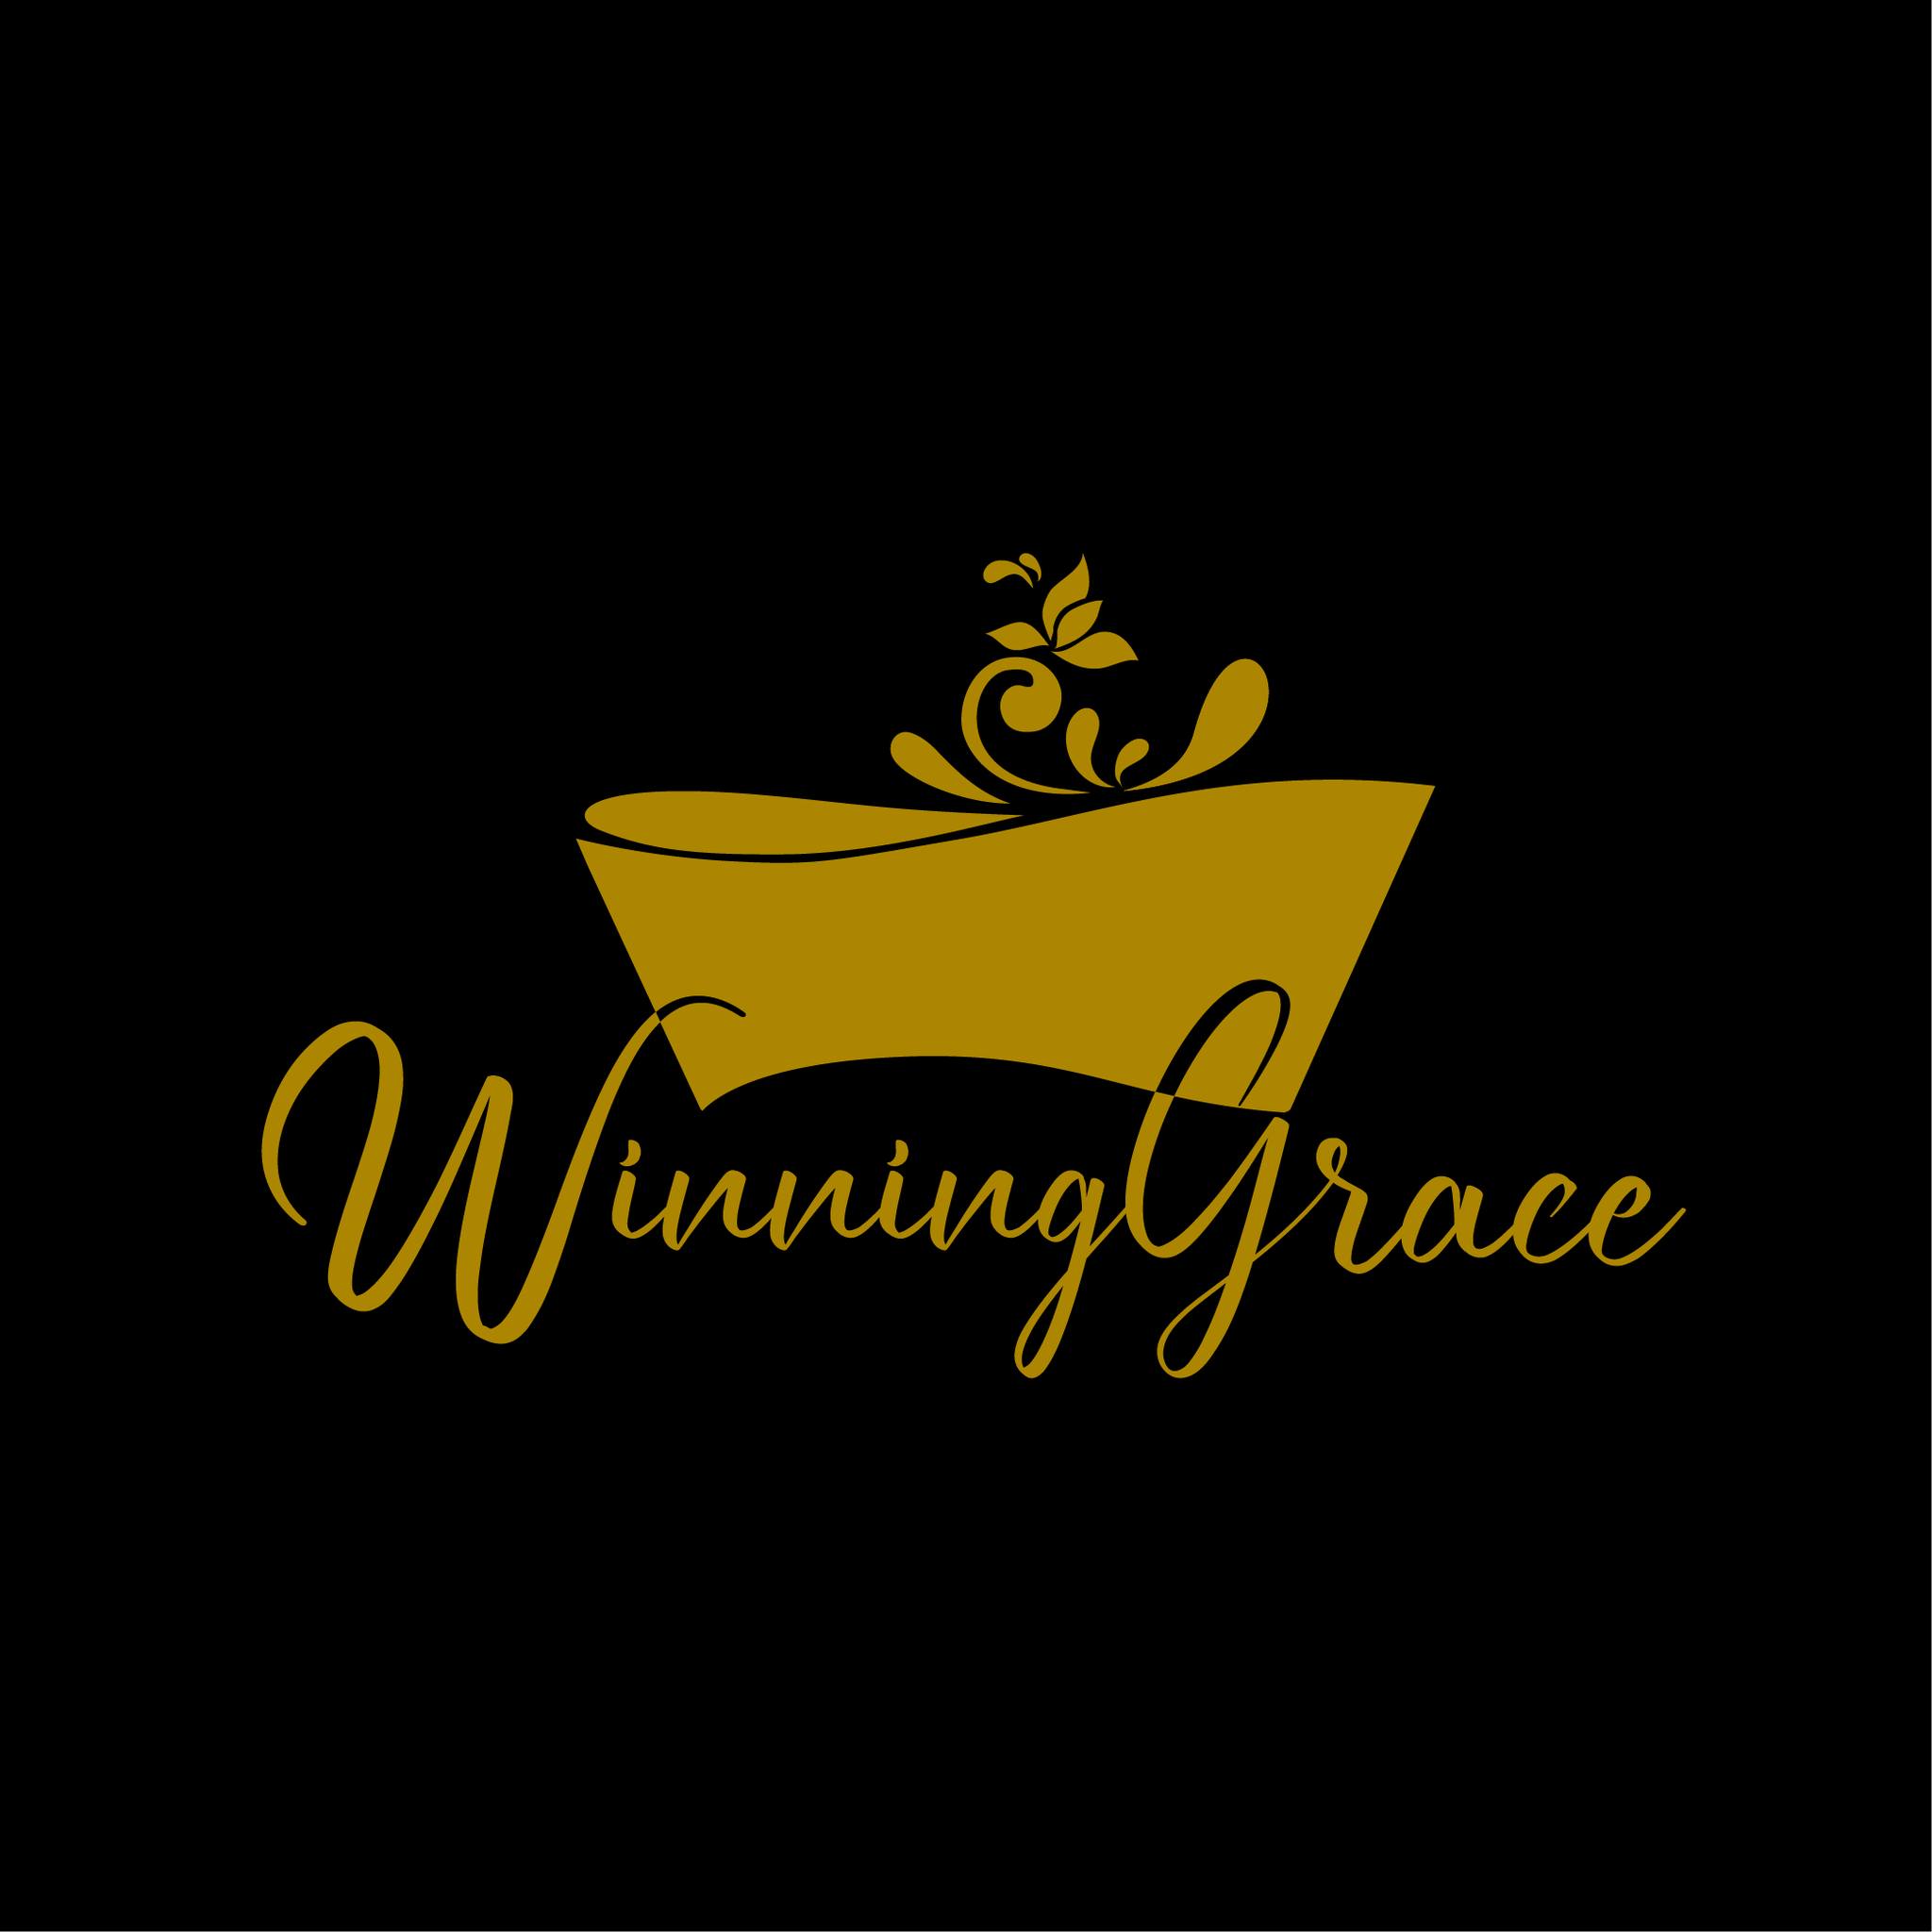 Winning Grace